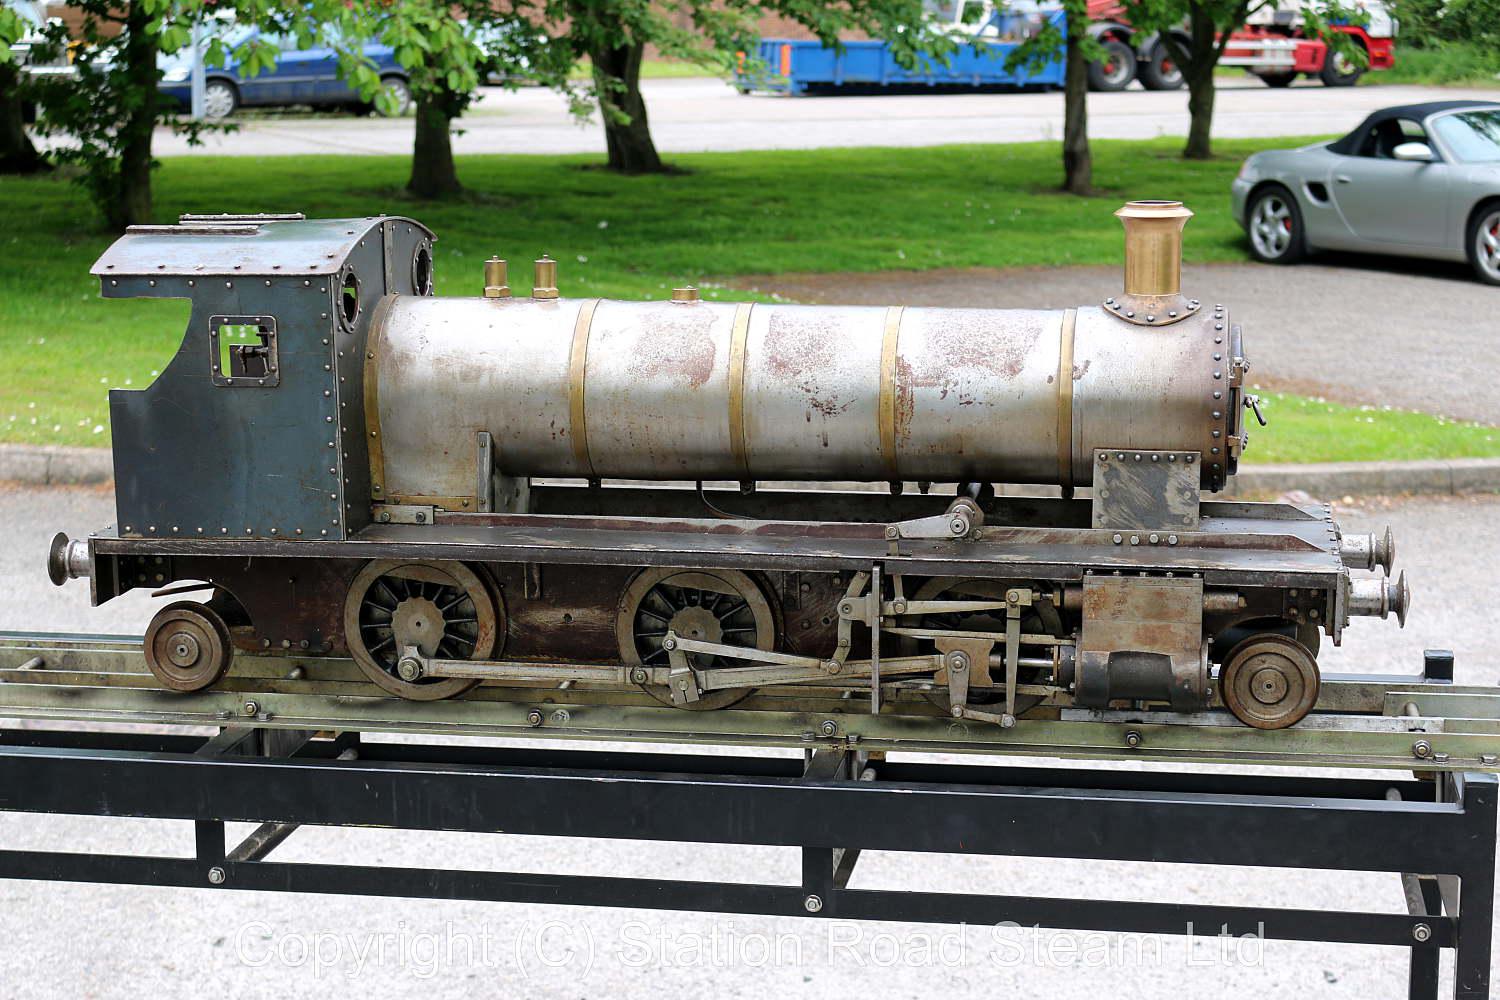 7 1/4 inch gauge 2-6-2 tender locomotive for completion